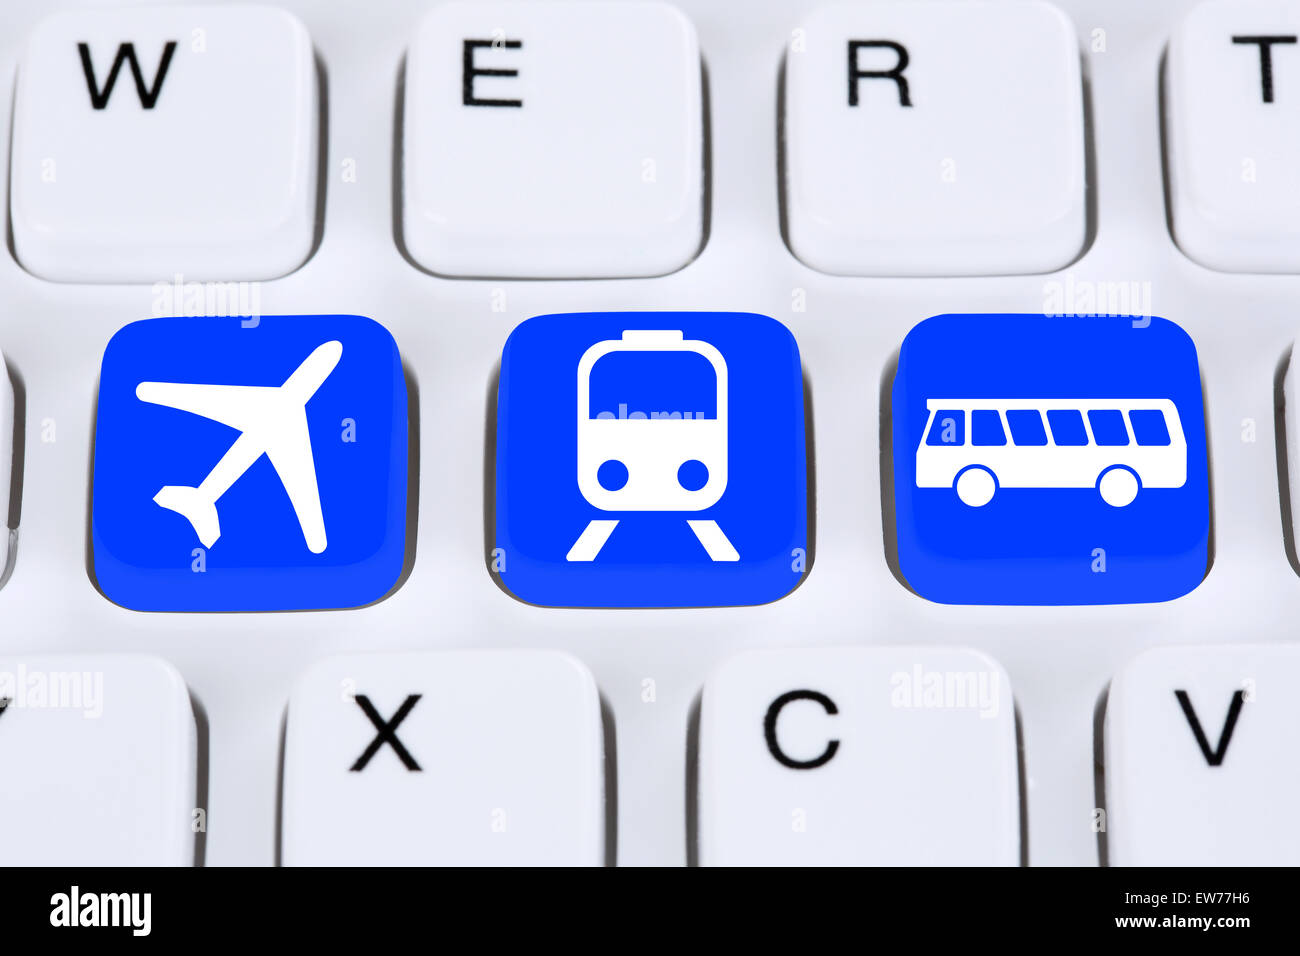 Prenota un viaggio travel online su internet computer con bus, aereo o treno Foto Stock